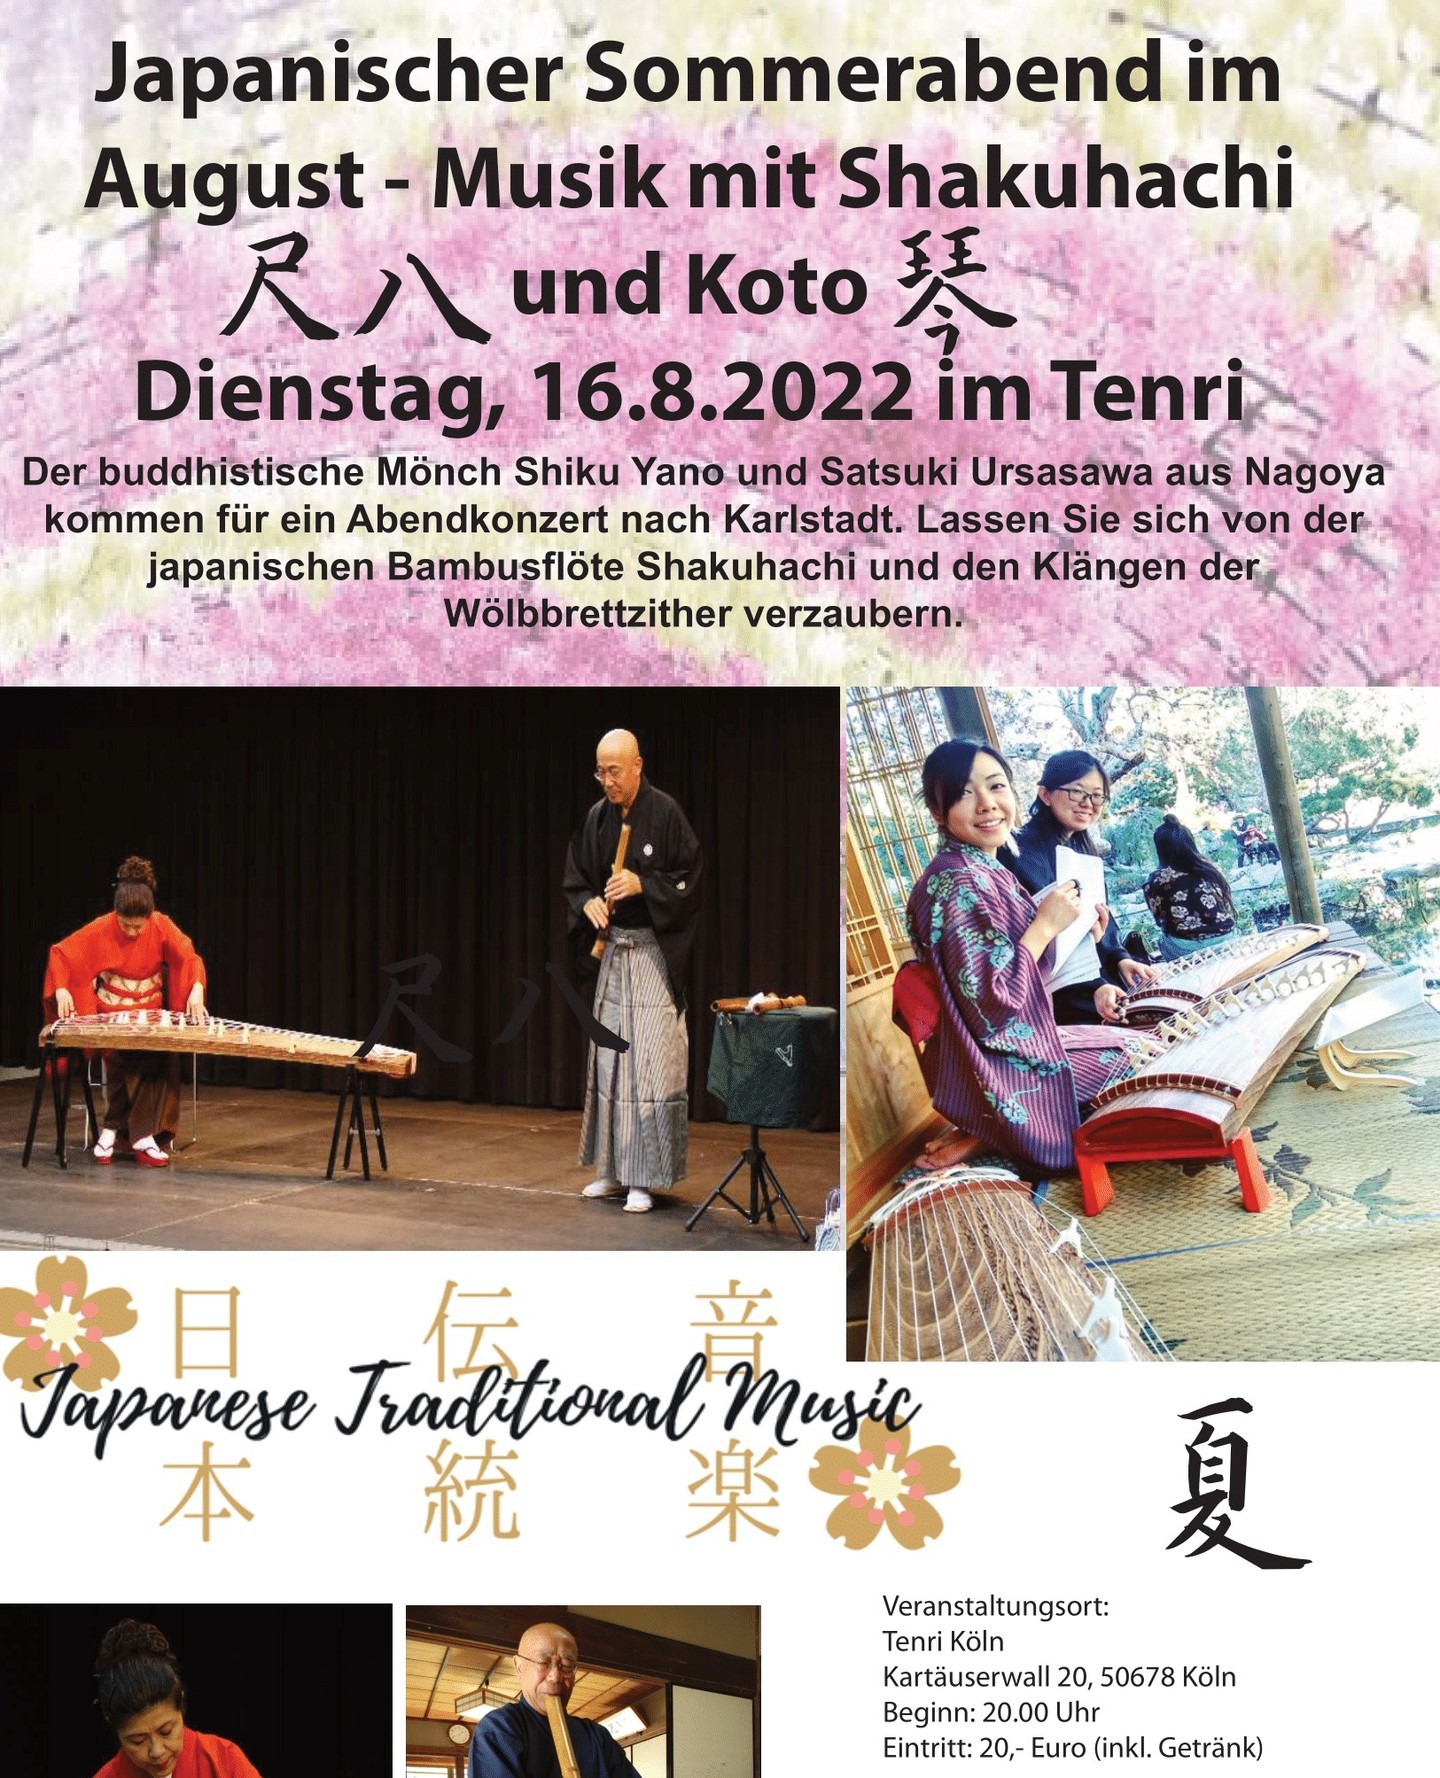 🎋~ Japanischer Sommerabend in der Tenri Kulturwerkstatt ~🎋⁠
⁠
Genießen Sie ein sommerabendliches Konzert mit Shakuhachi und Koto! Die traditionelle japanische Musik wird gespielt von Satsuki Urasawa und dem buddhistischen Mönch Shiku Yano aus Nagoya. ⁠
⁠
Wann: Dienstag, 16.08.2022 um 20 Uhr⁠
Eintritt: 20€ inkl. Getränk.⁠
⁠
Für ausreichend Belüftung ist gesorgt.⁠
⁠
#traditional #traditionell # traditionellemusik #klassik #musik #music #konzert #köln #tenri #kunst #art #cologne #exhibition #deutschland #kultur #germany #japan #kulturwerkstatt #supportcreatives #koto #shakuhachi #nagoya #klassischemusik #classicalmusic #summer #summerconcert #august #japanesetraditionalmusic #japanese #夏　#尺八